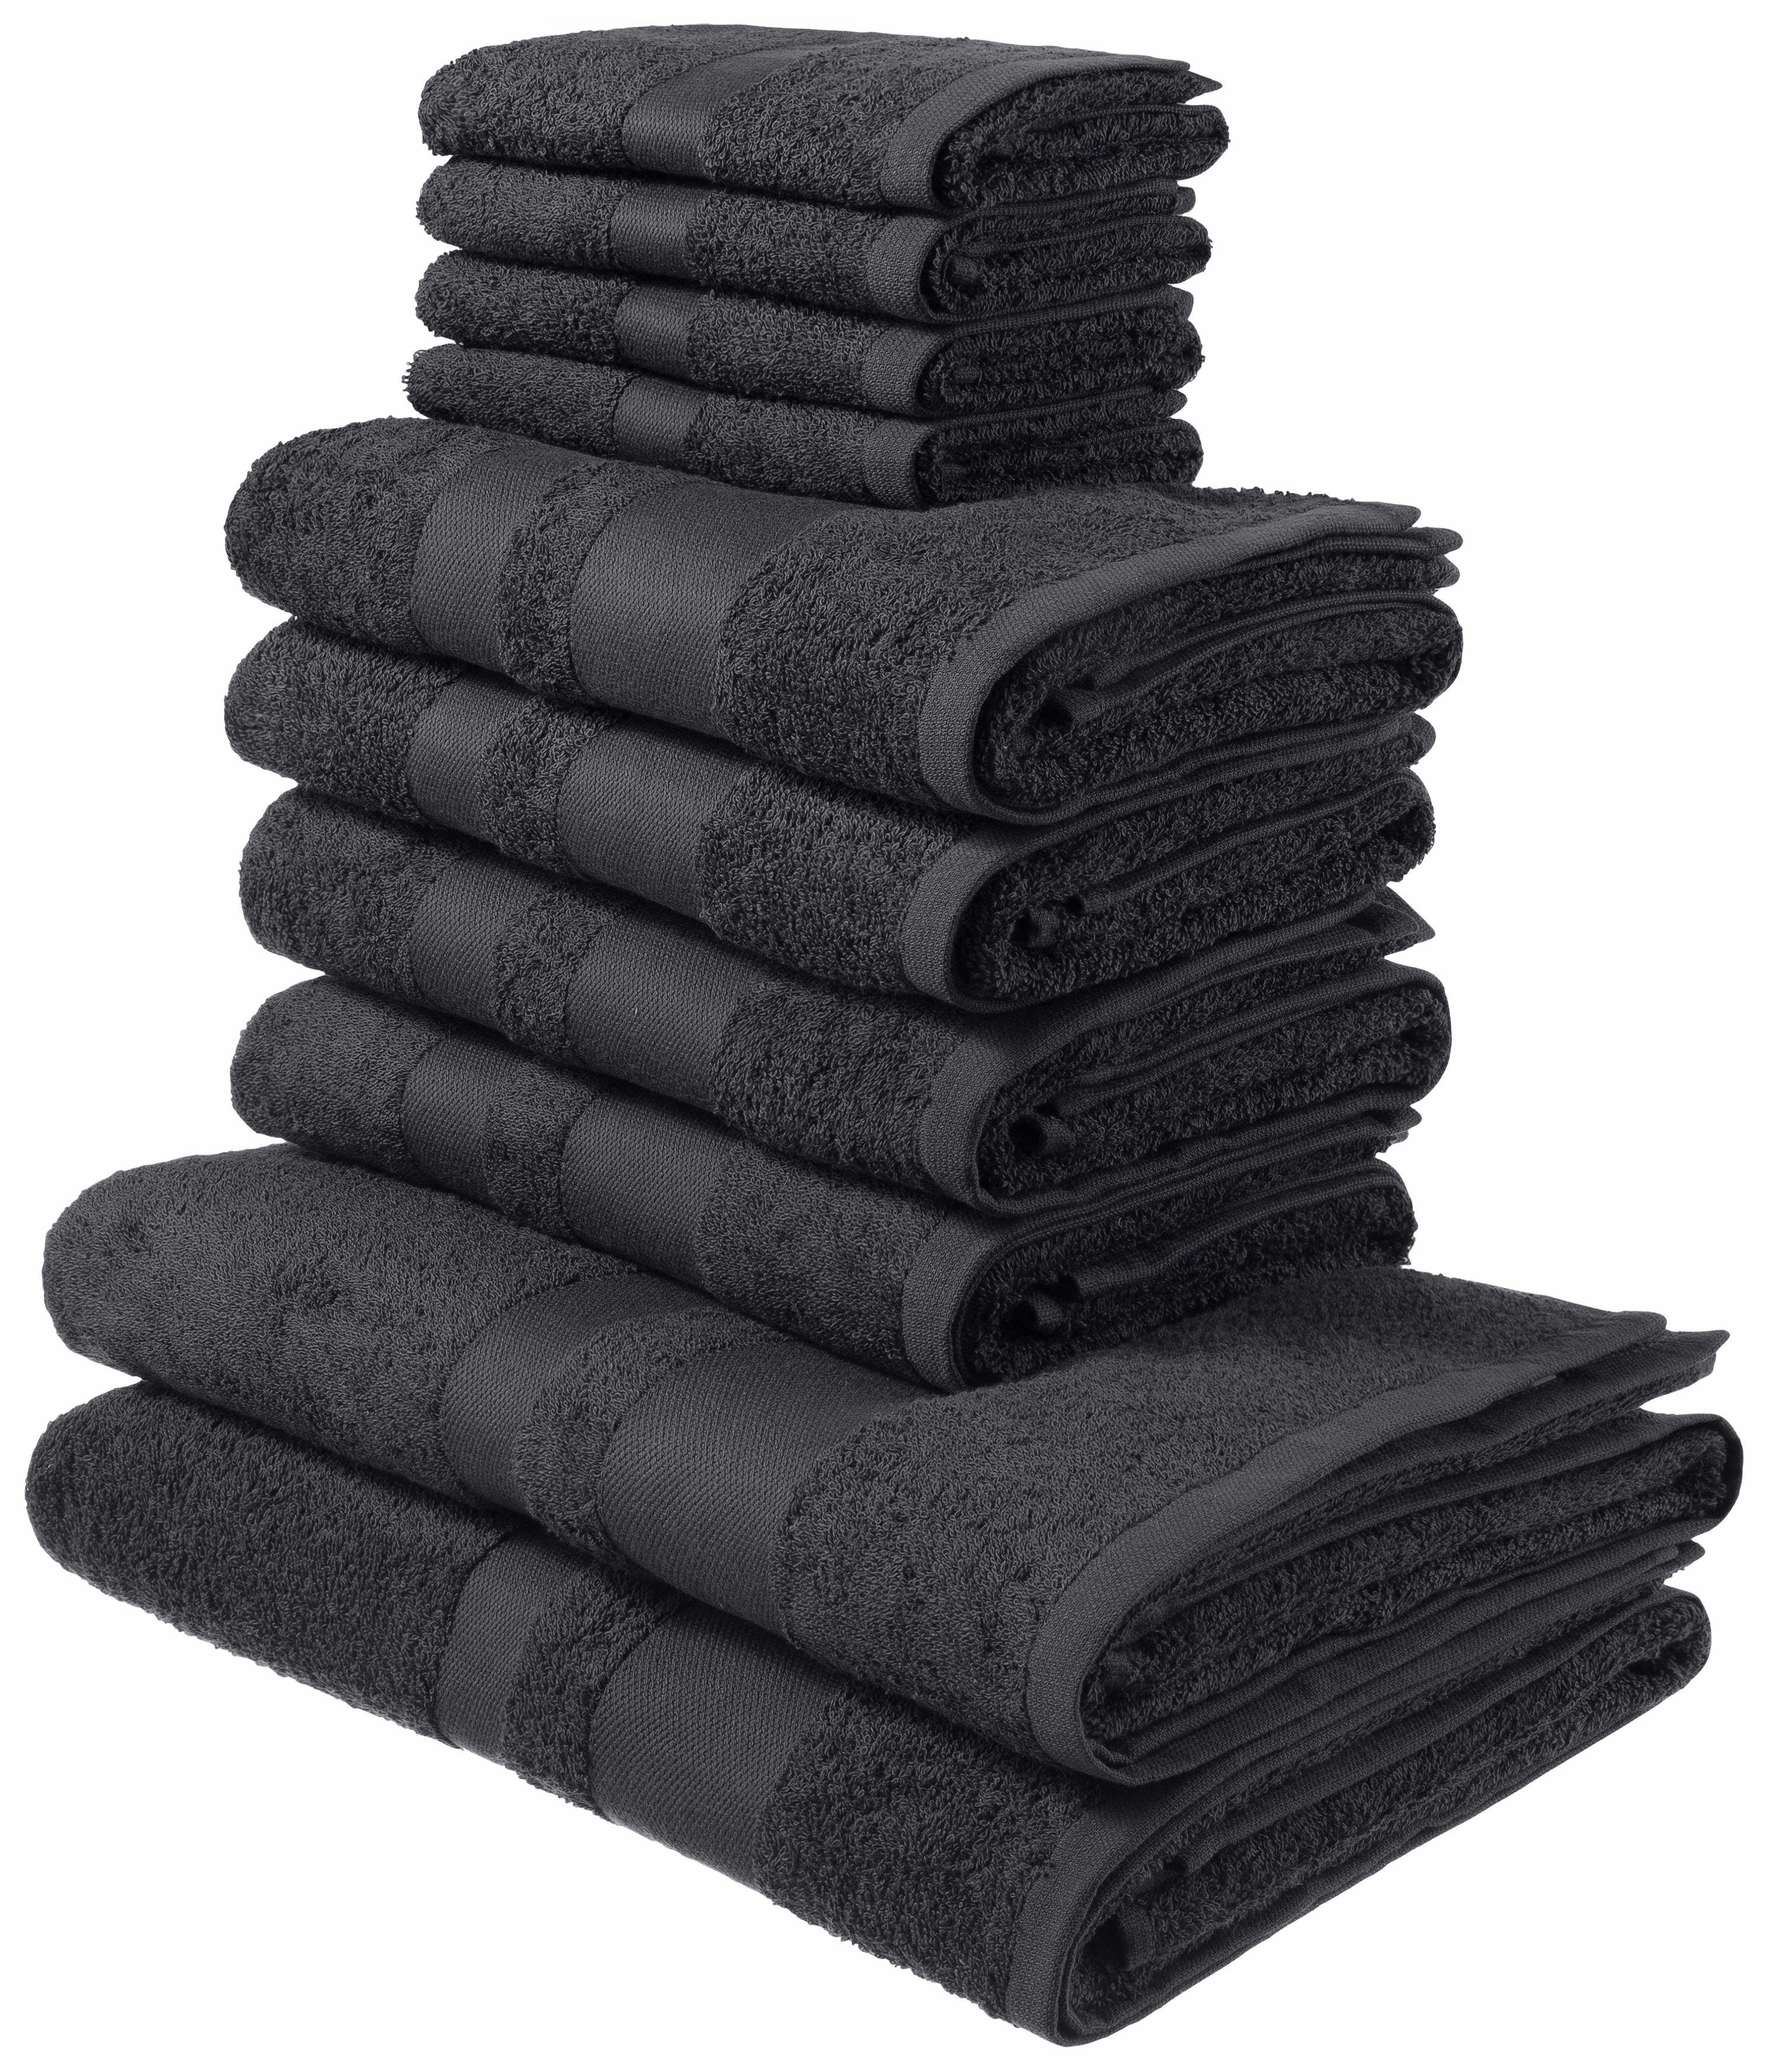 Handtuch-Set in grau online kaufen | OTTO